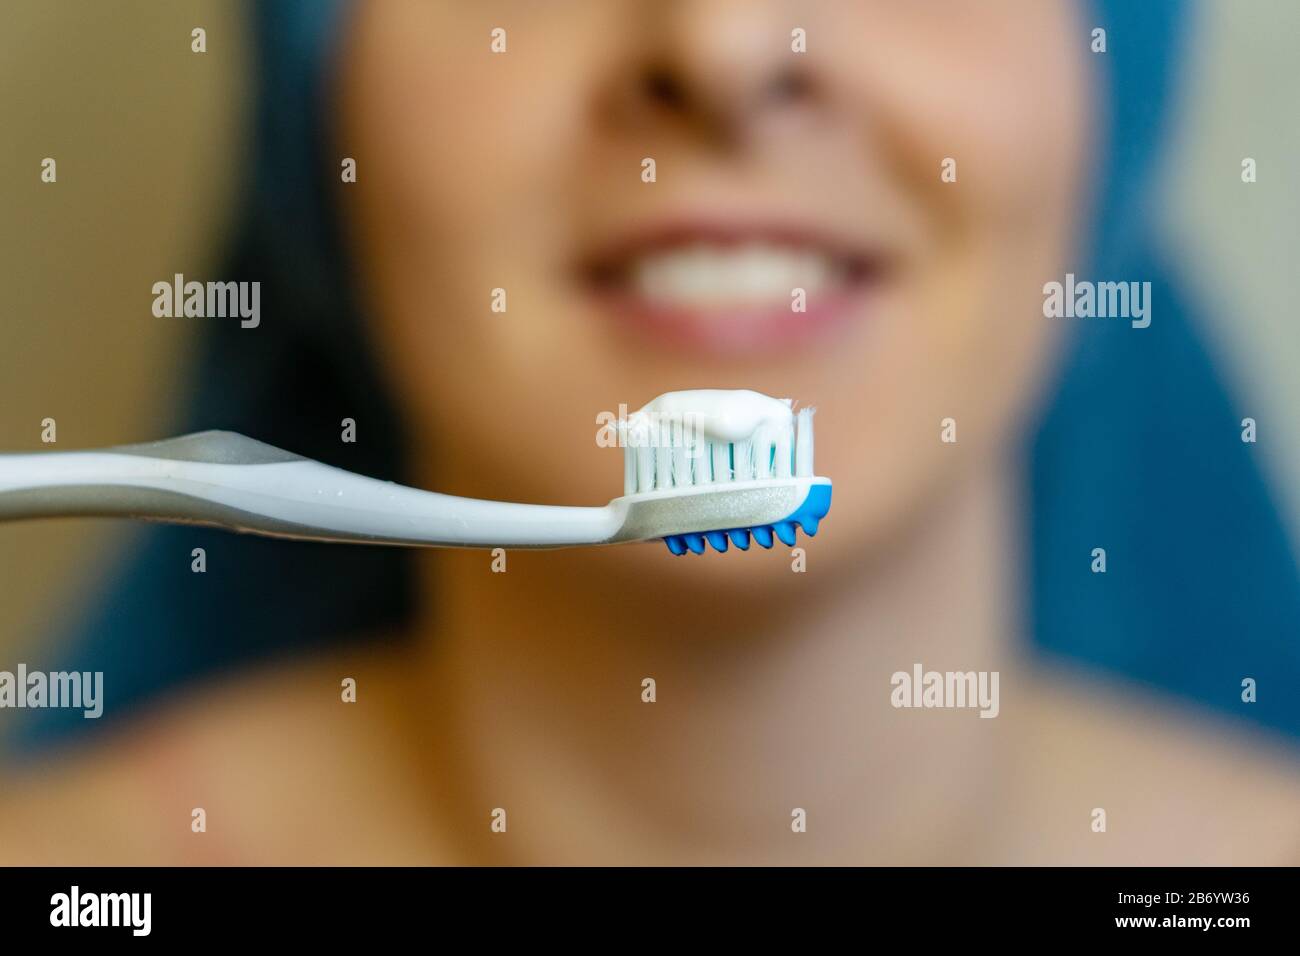 mujer lavándose los dientes después de la ducha rutina diaria . Foto de stock